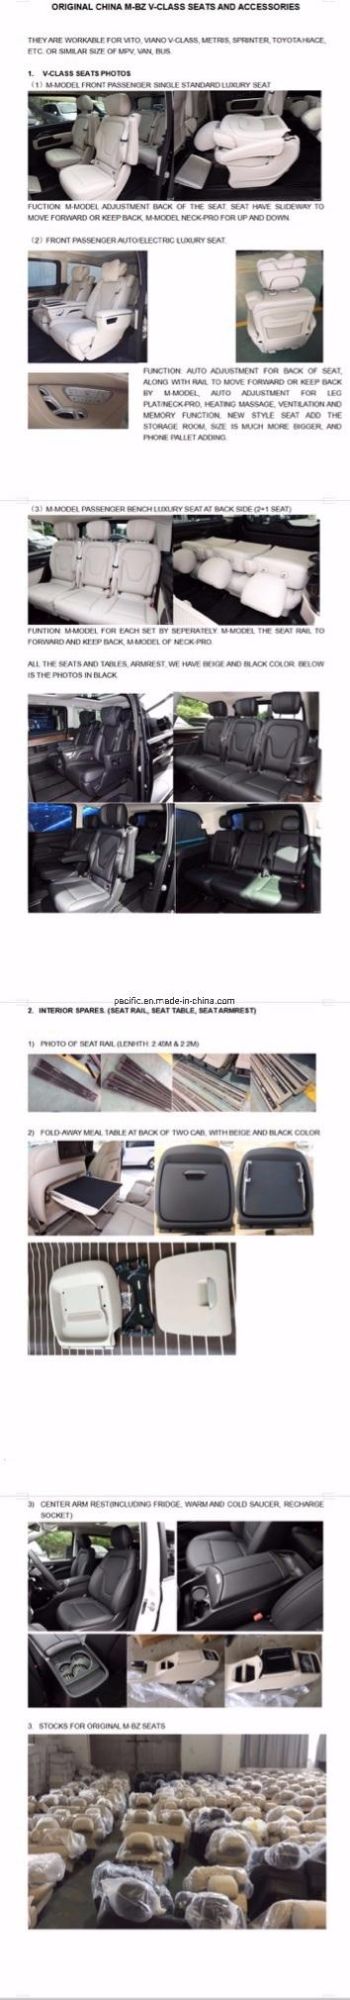 Vito Viano Interior Seats Conversion New V Class Seat